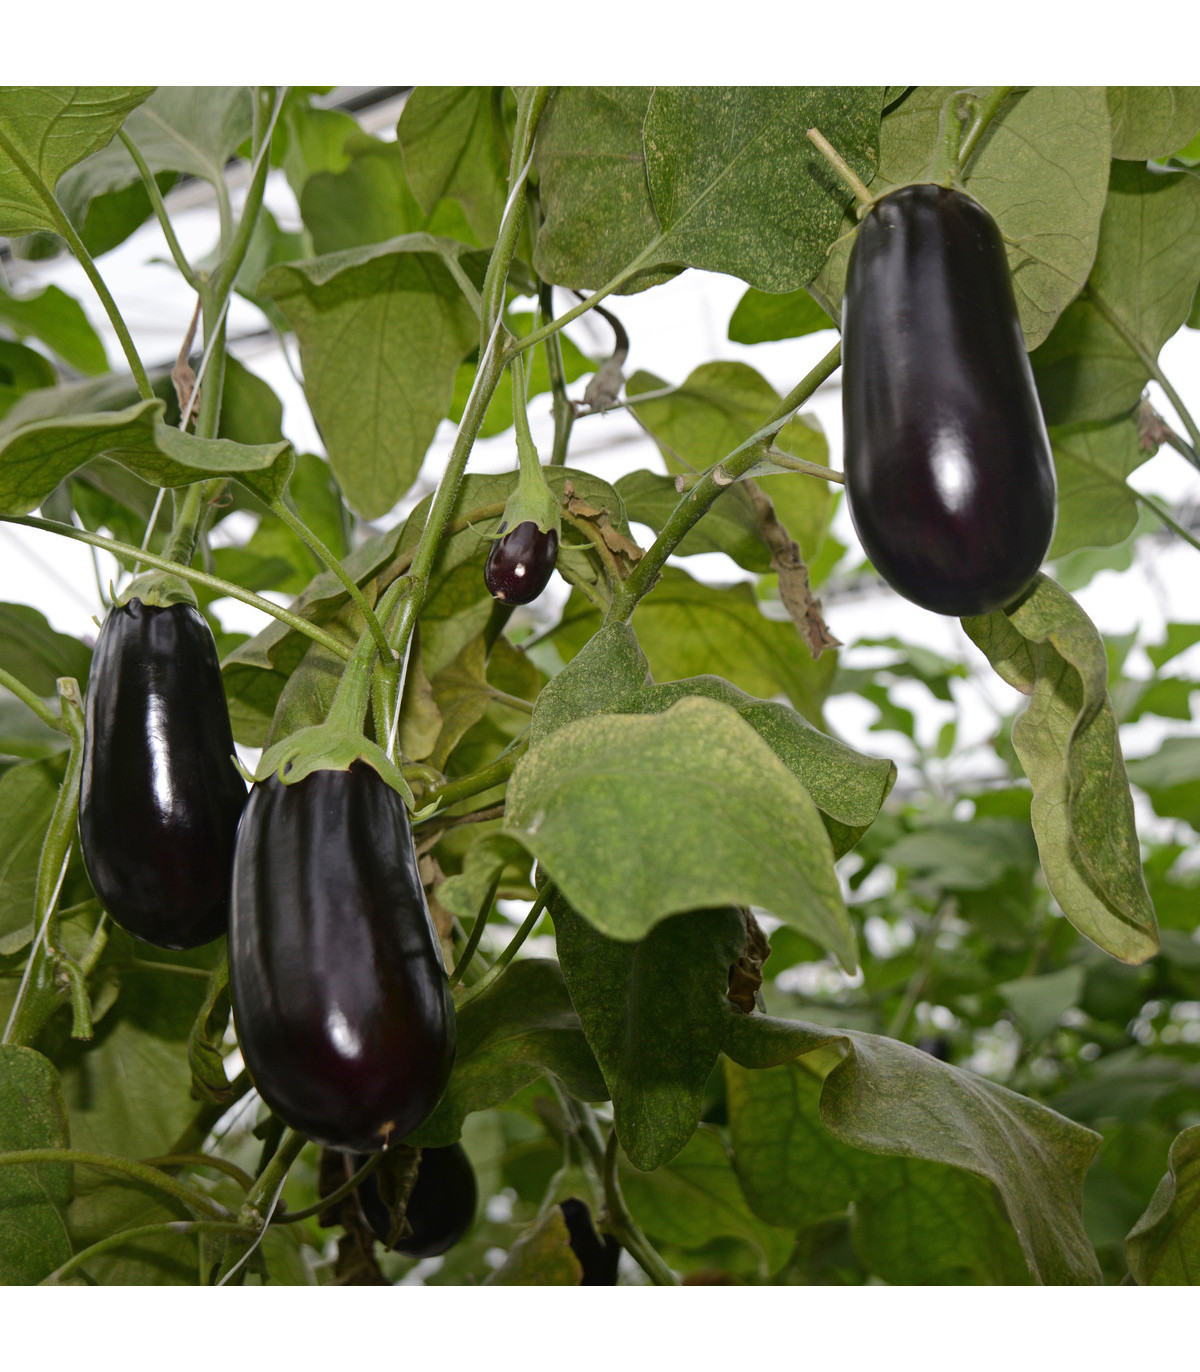 Baklažán vajcoplodý Black Beauty - Solanum melongena - semená baklažánu - 60 ks